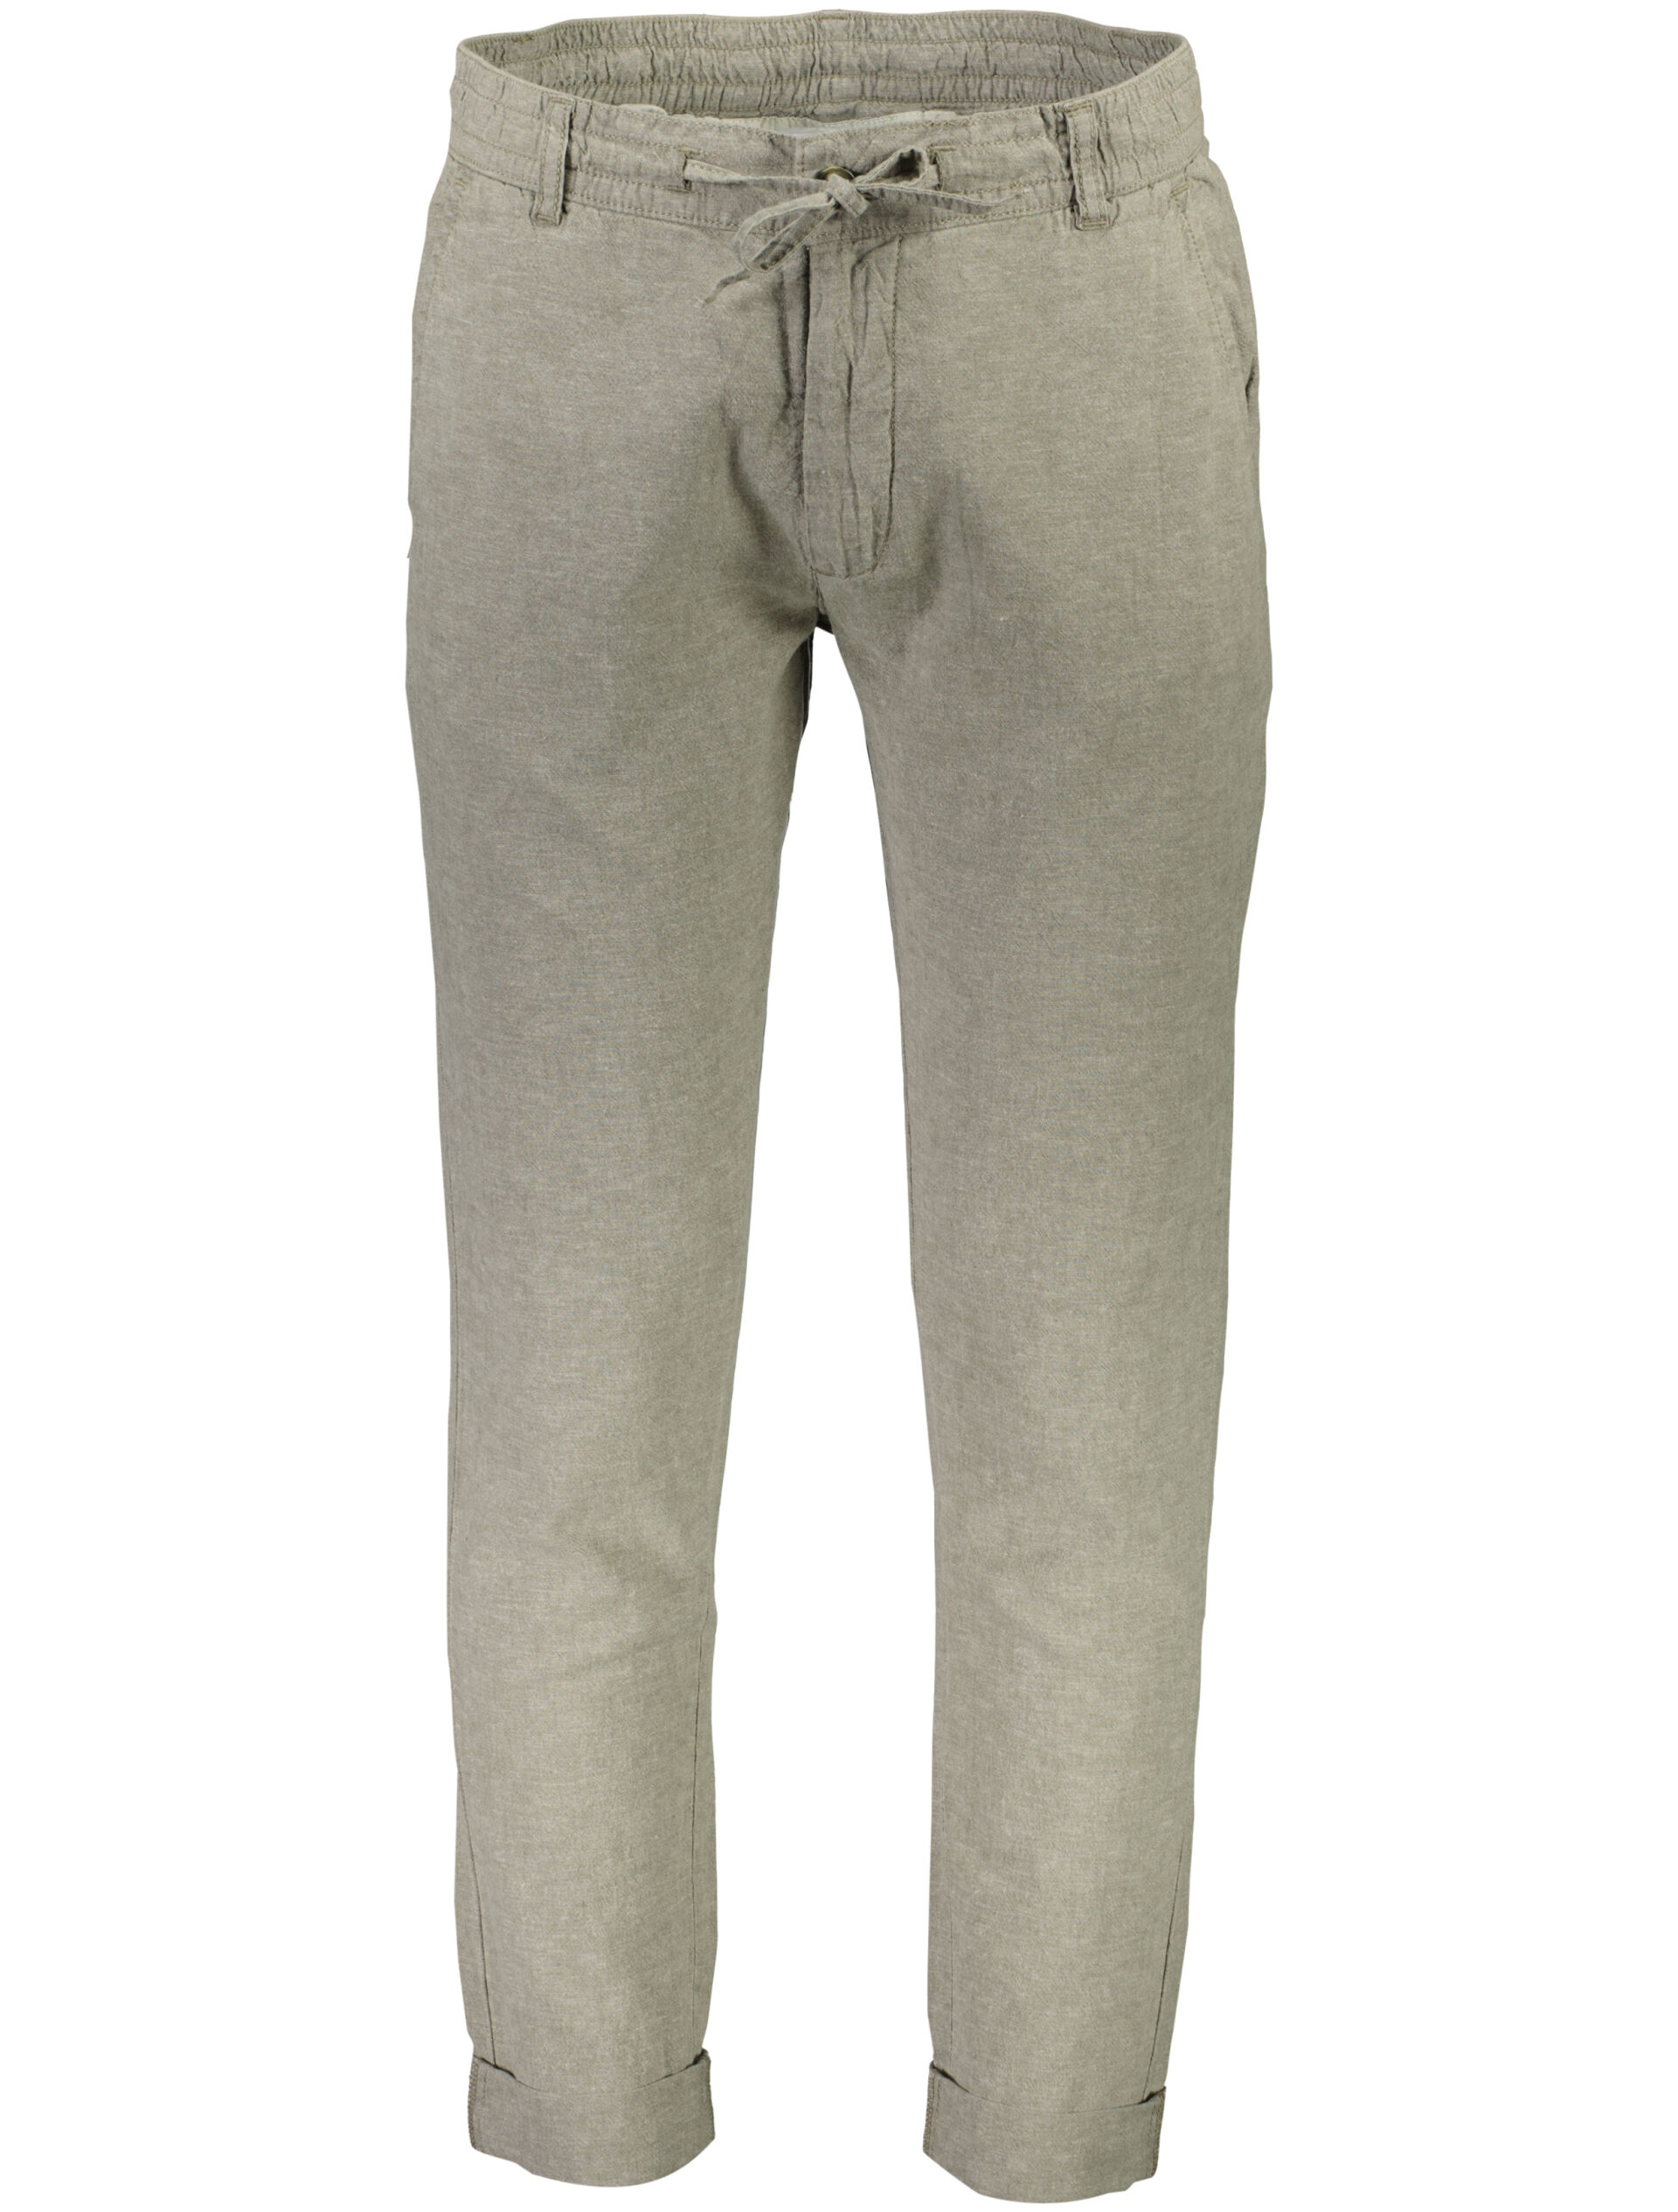 Linen pants 30-008003